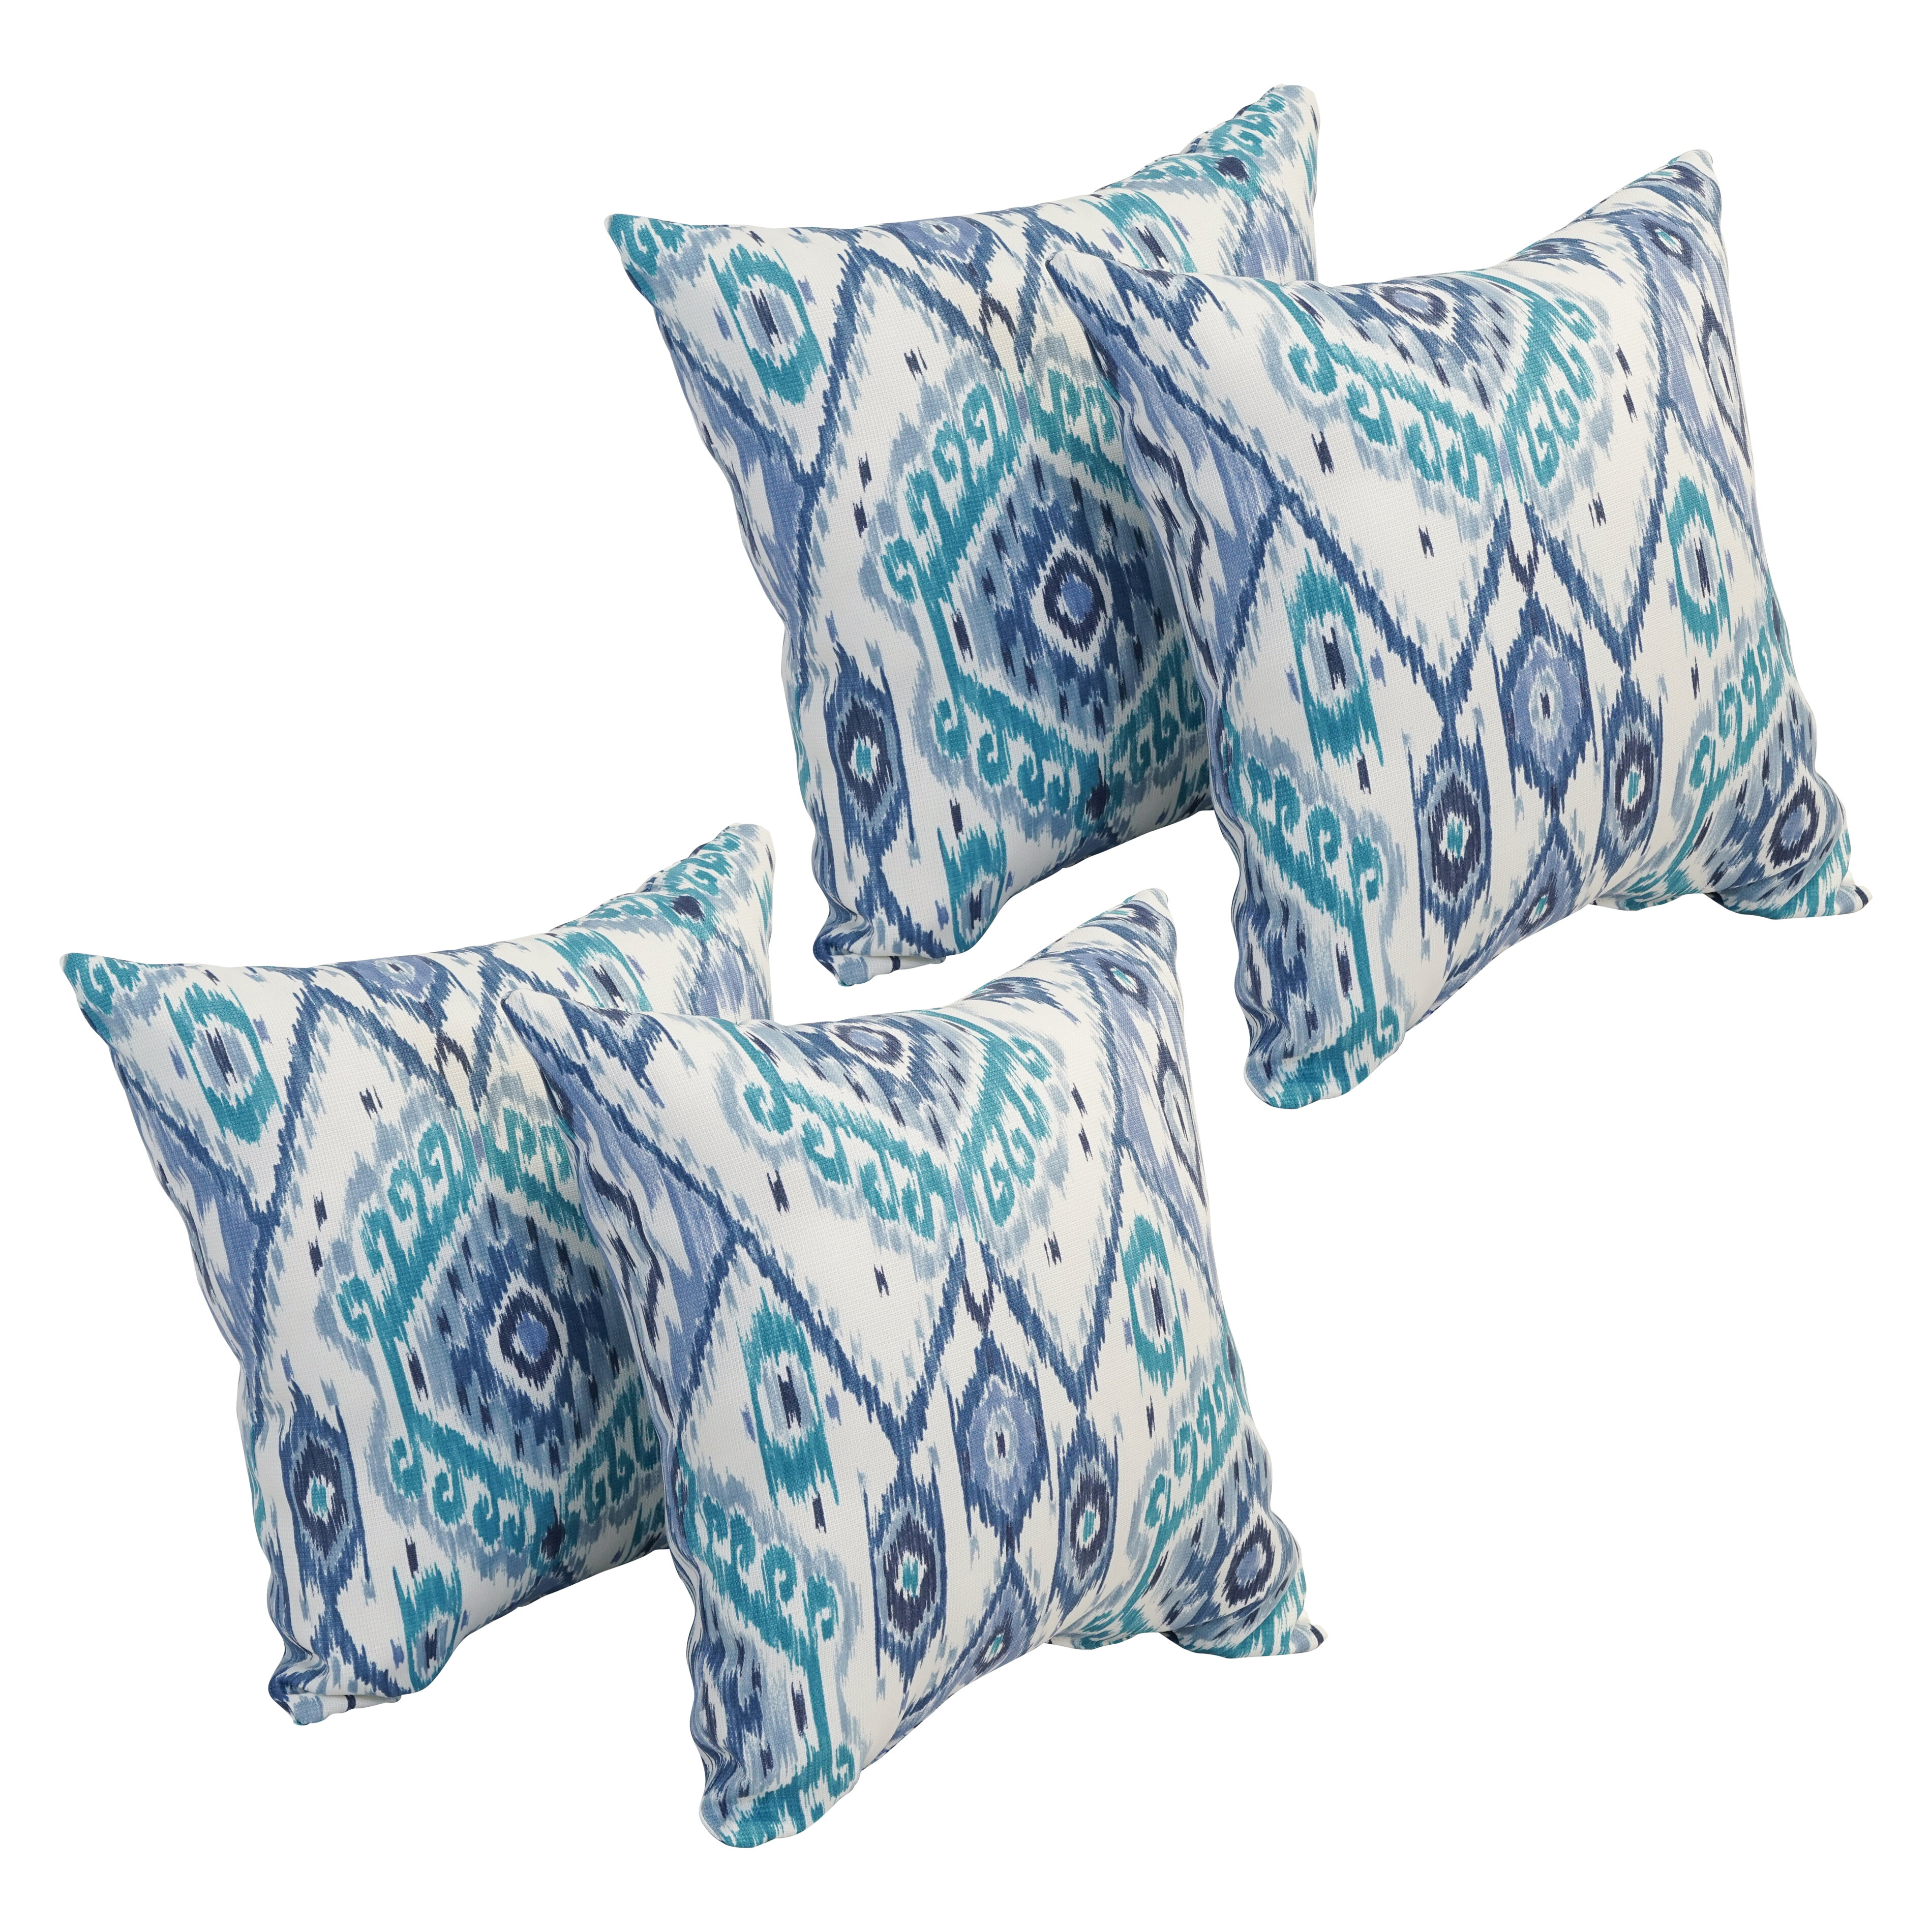 18x10 Set of 2 for Patio Furniture Bolster Rectangle Pillows SewKer Indoor/Outdoor Decorative Lumbar Throw Pillows Water Resistant Teal 